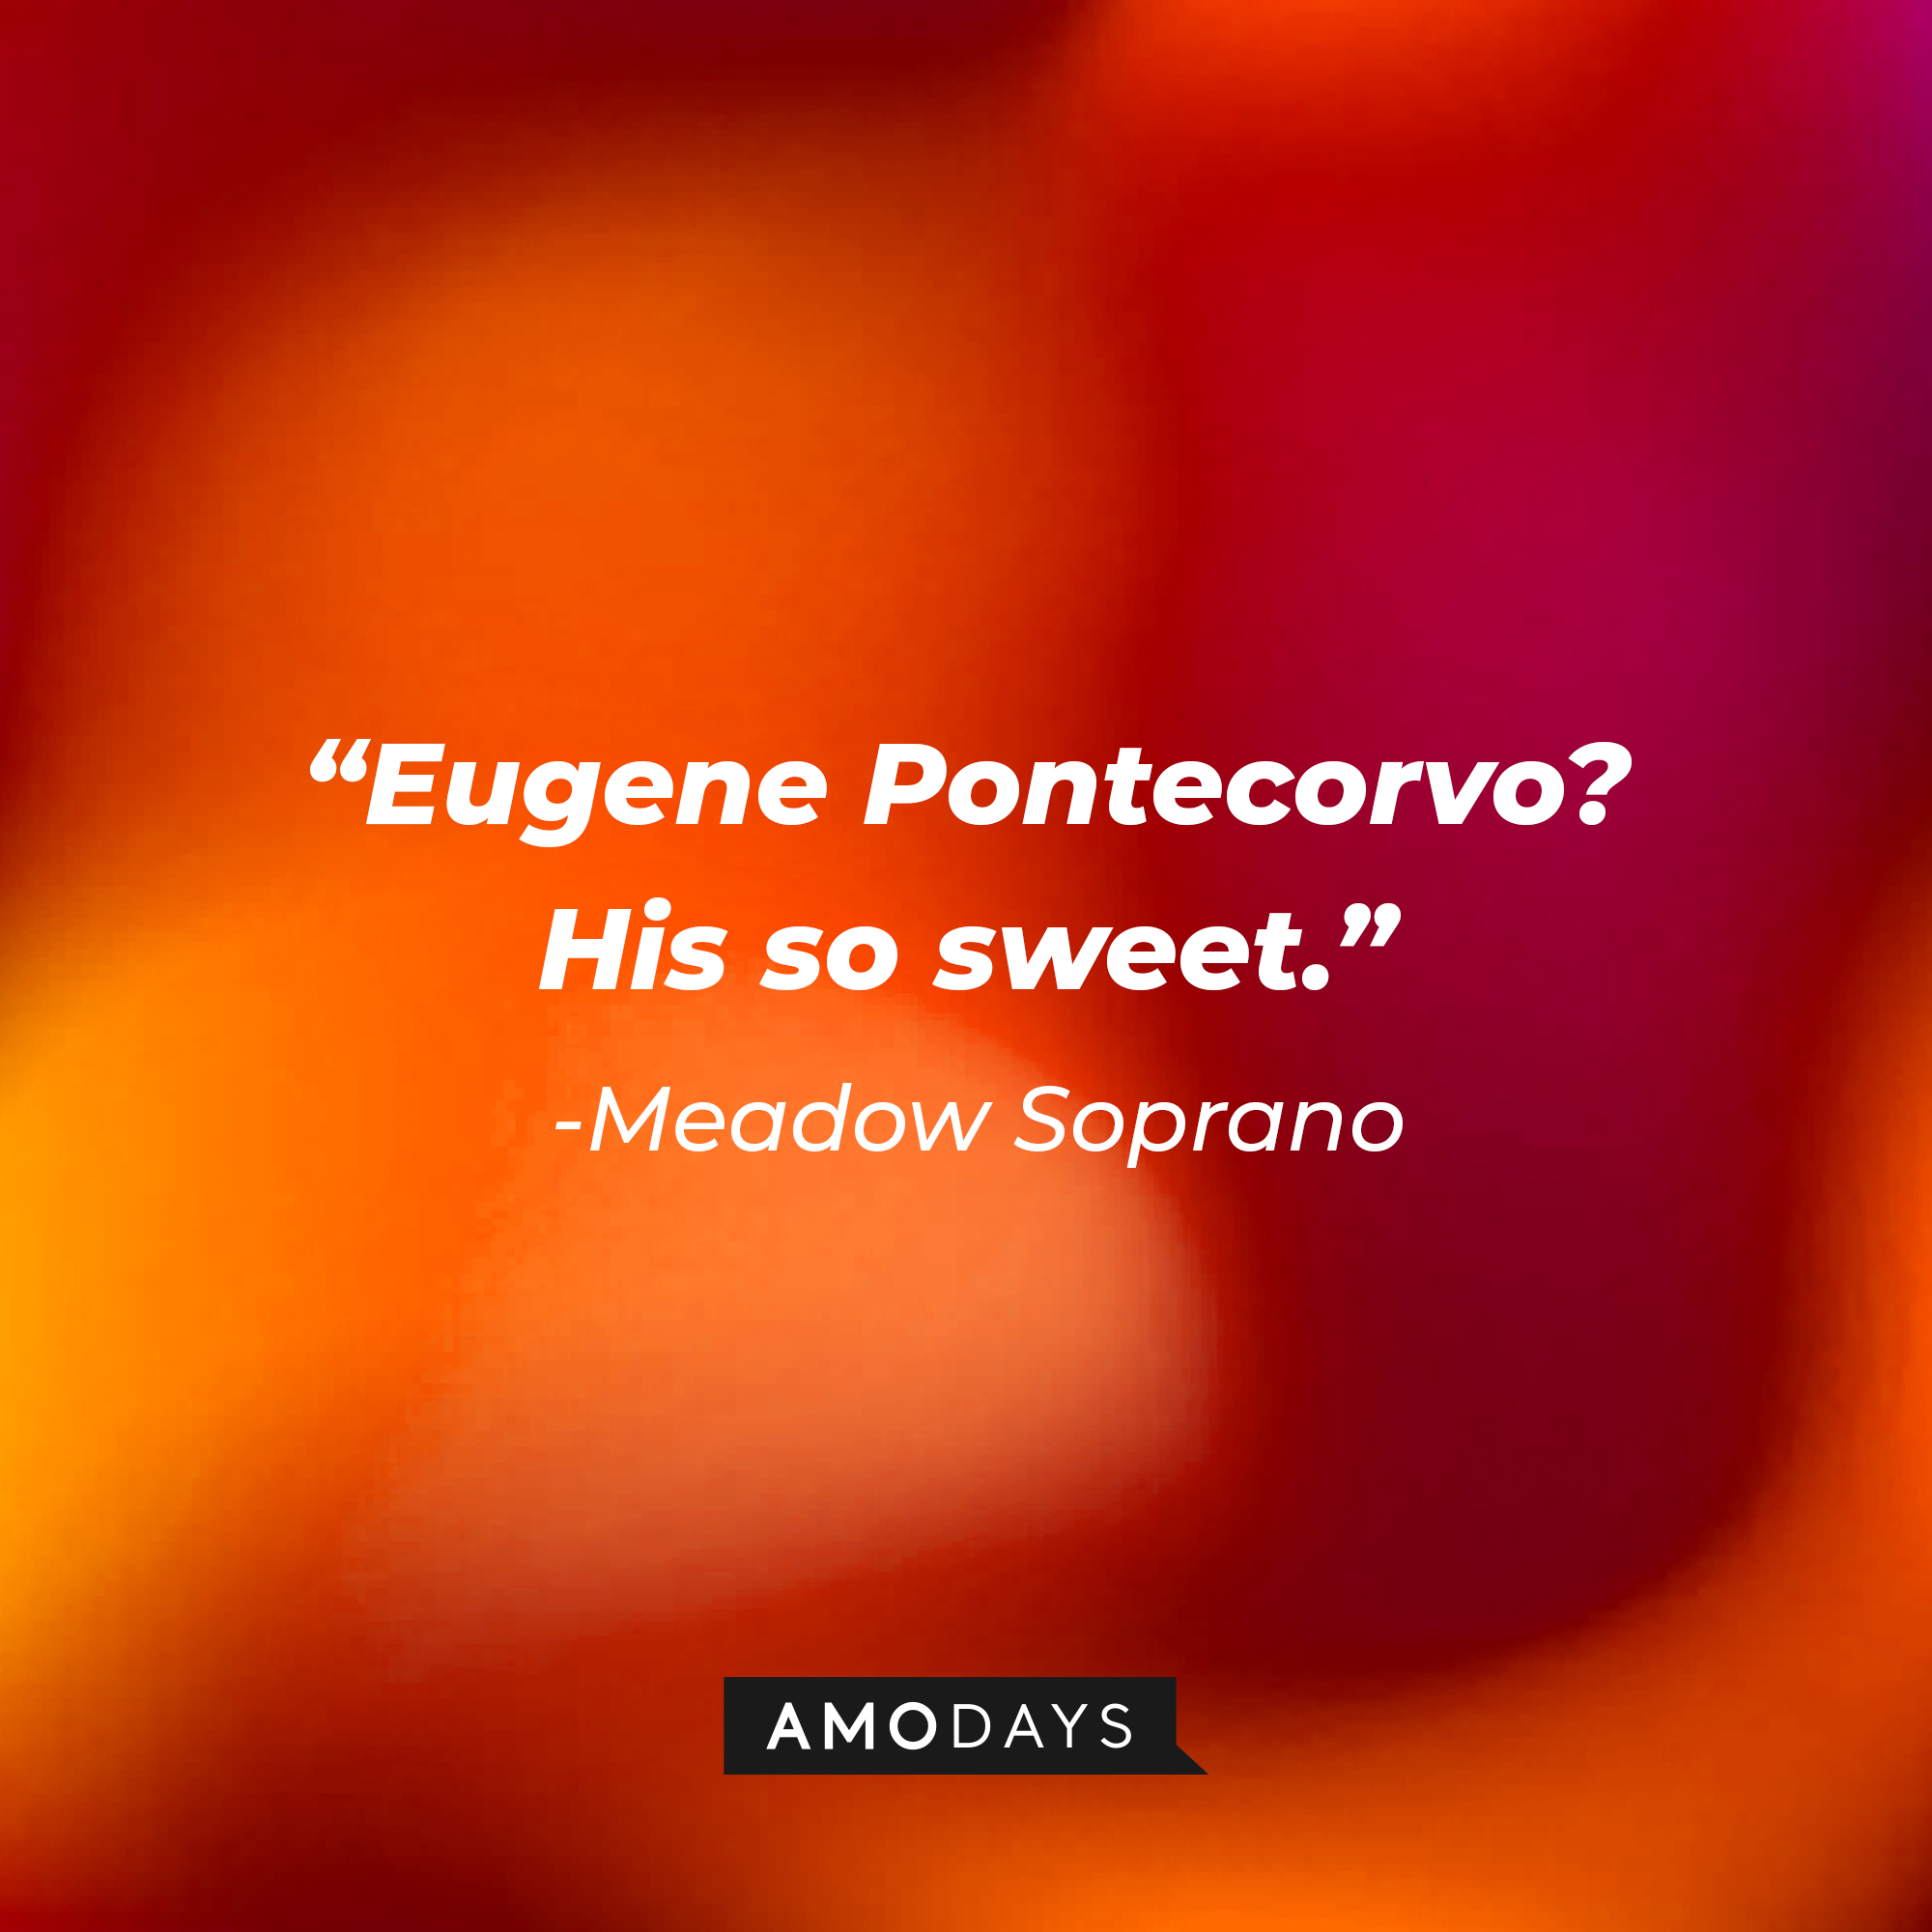 Meadow Soprano’s quote: “Eugene Pontecorvo? His so sweet.” | Source: AmoDays